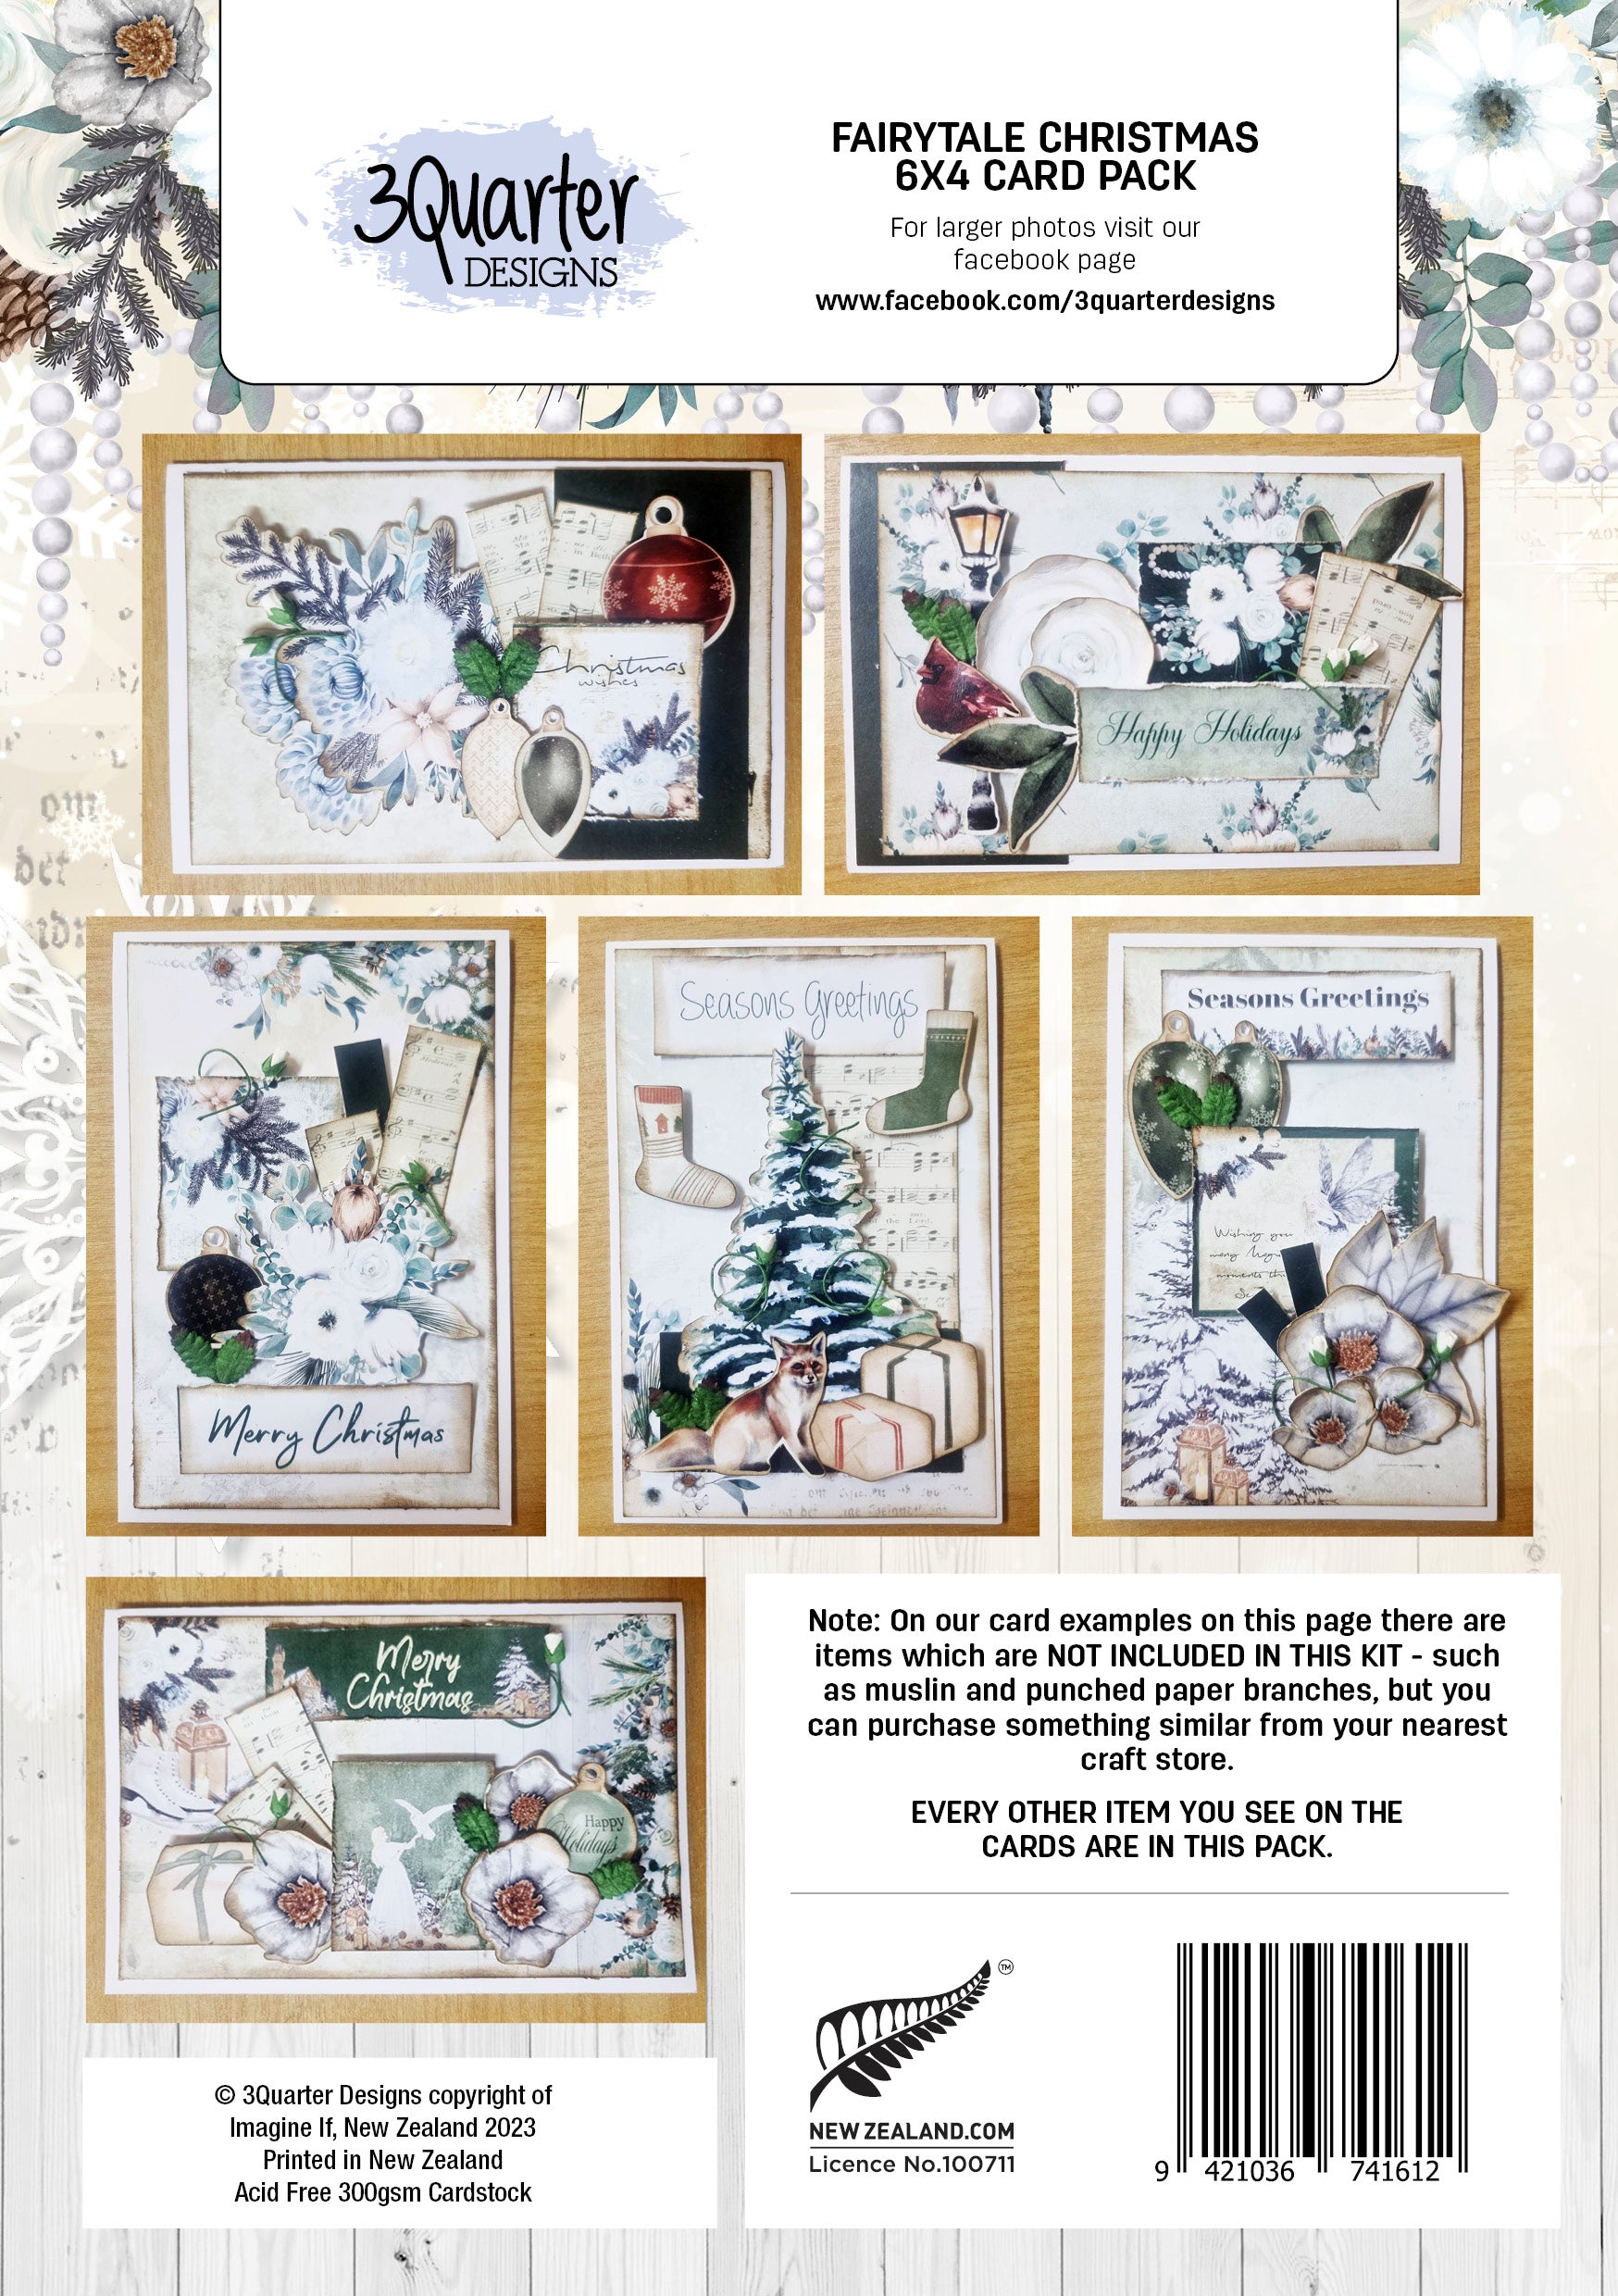 Fairytale Christmas 6x4 card pack